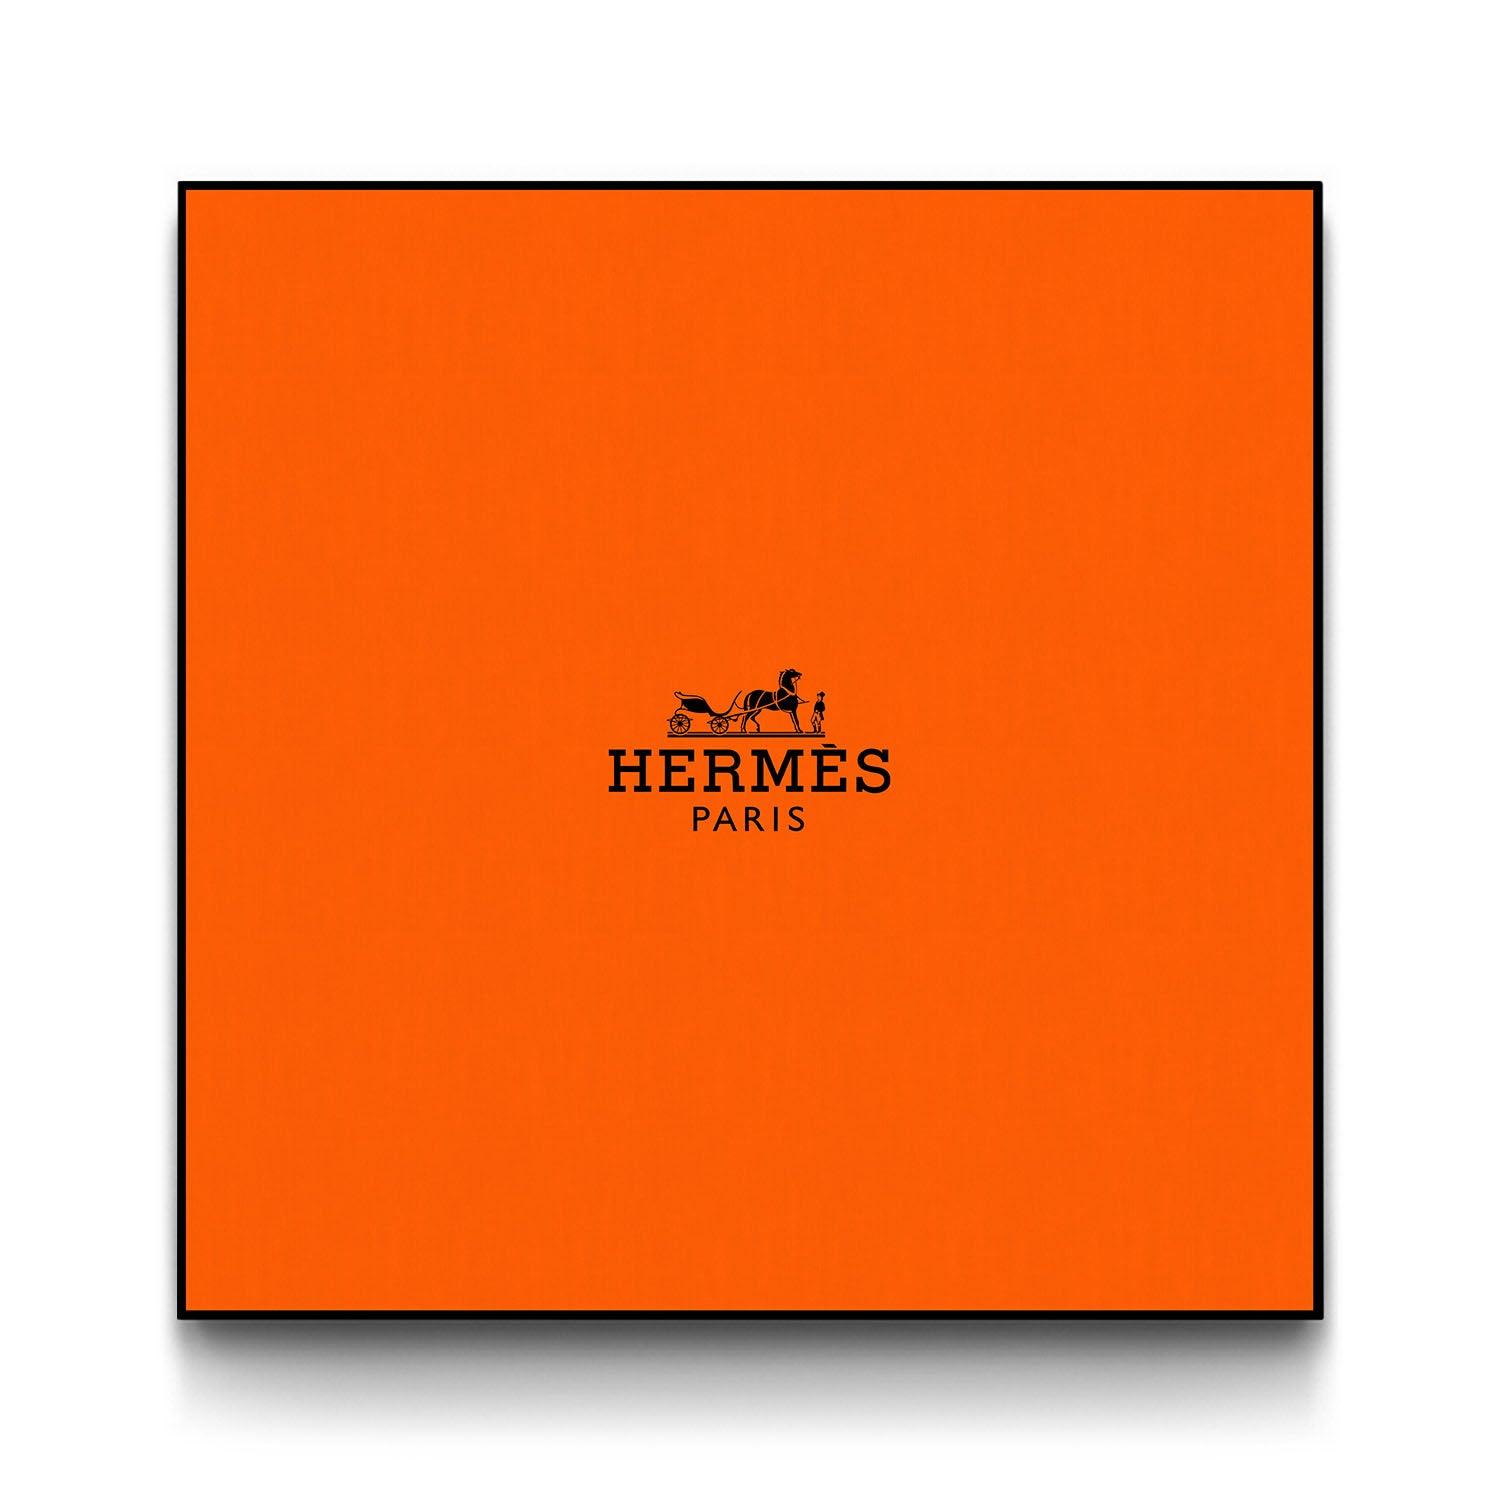 Hermès Box Art - Black